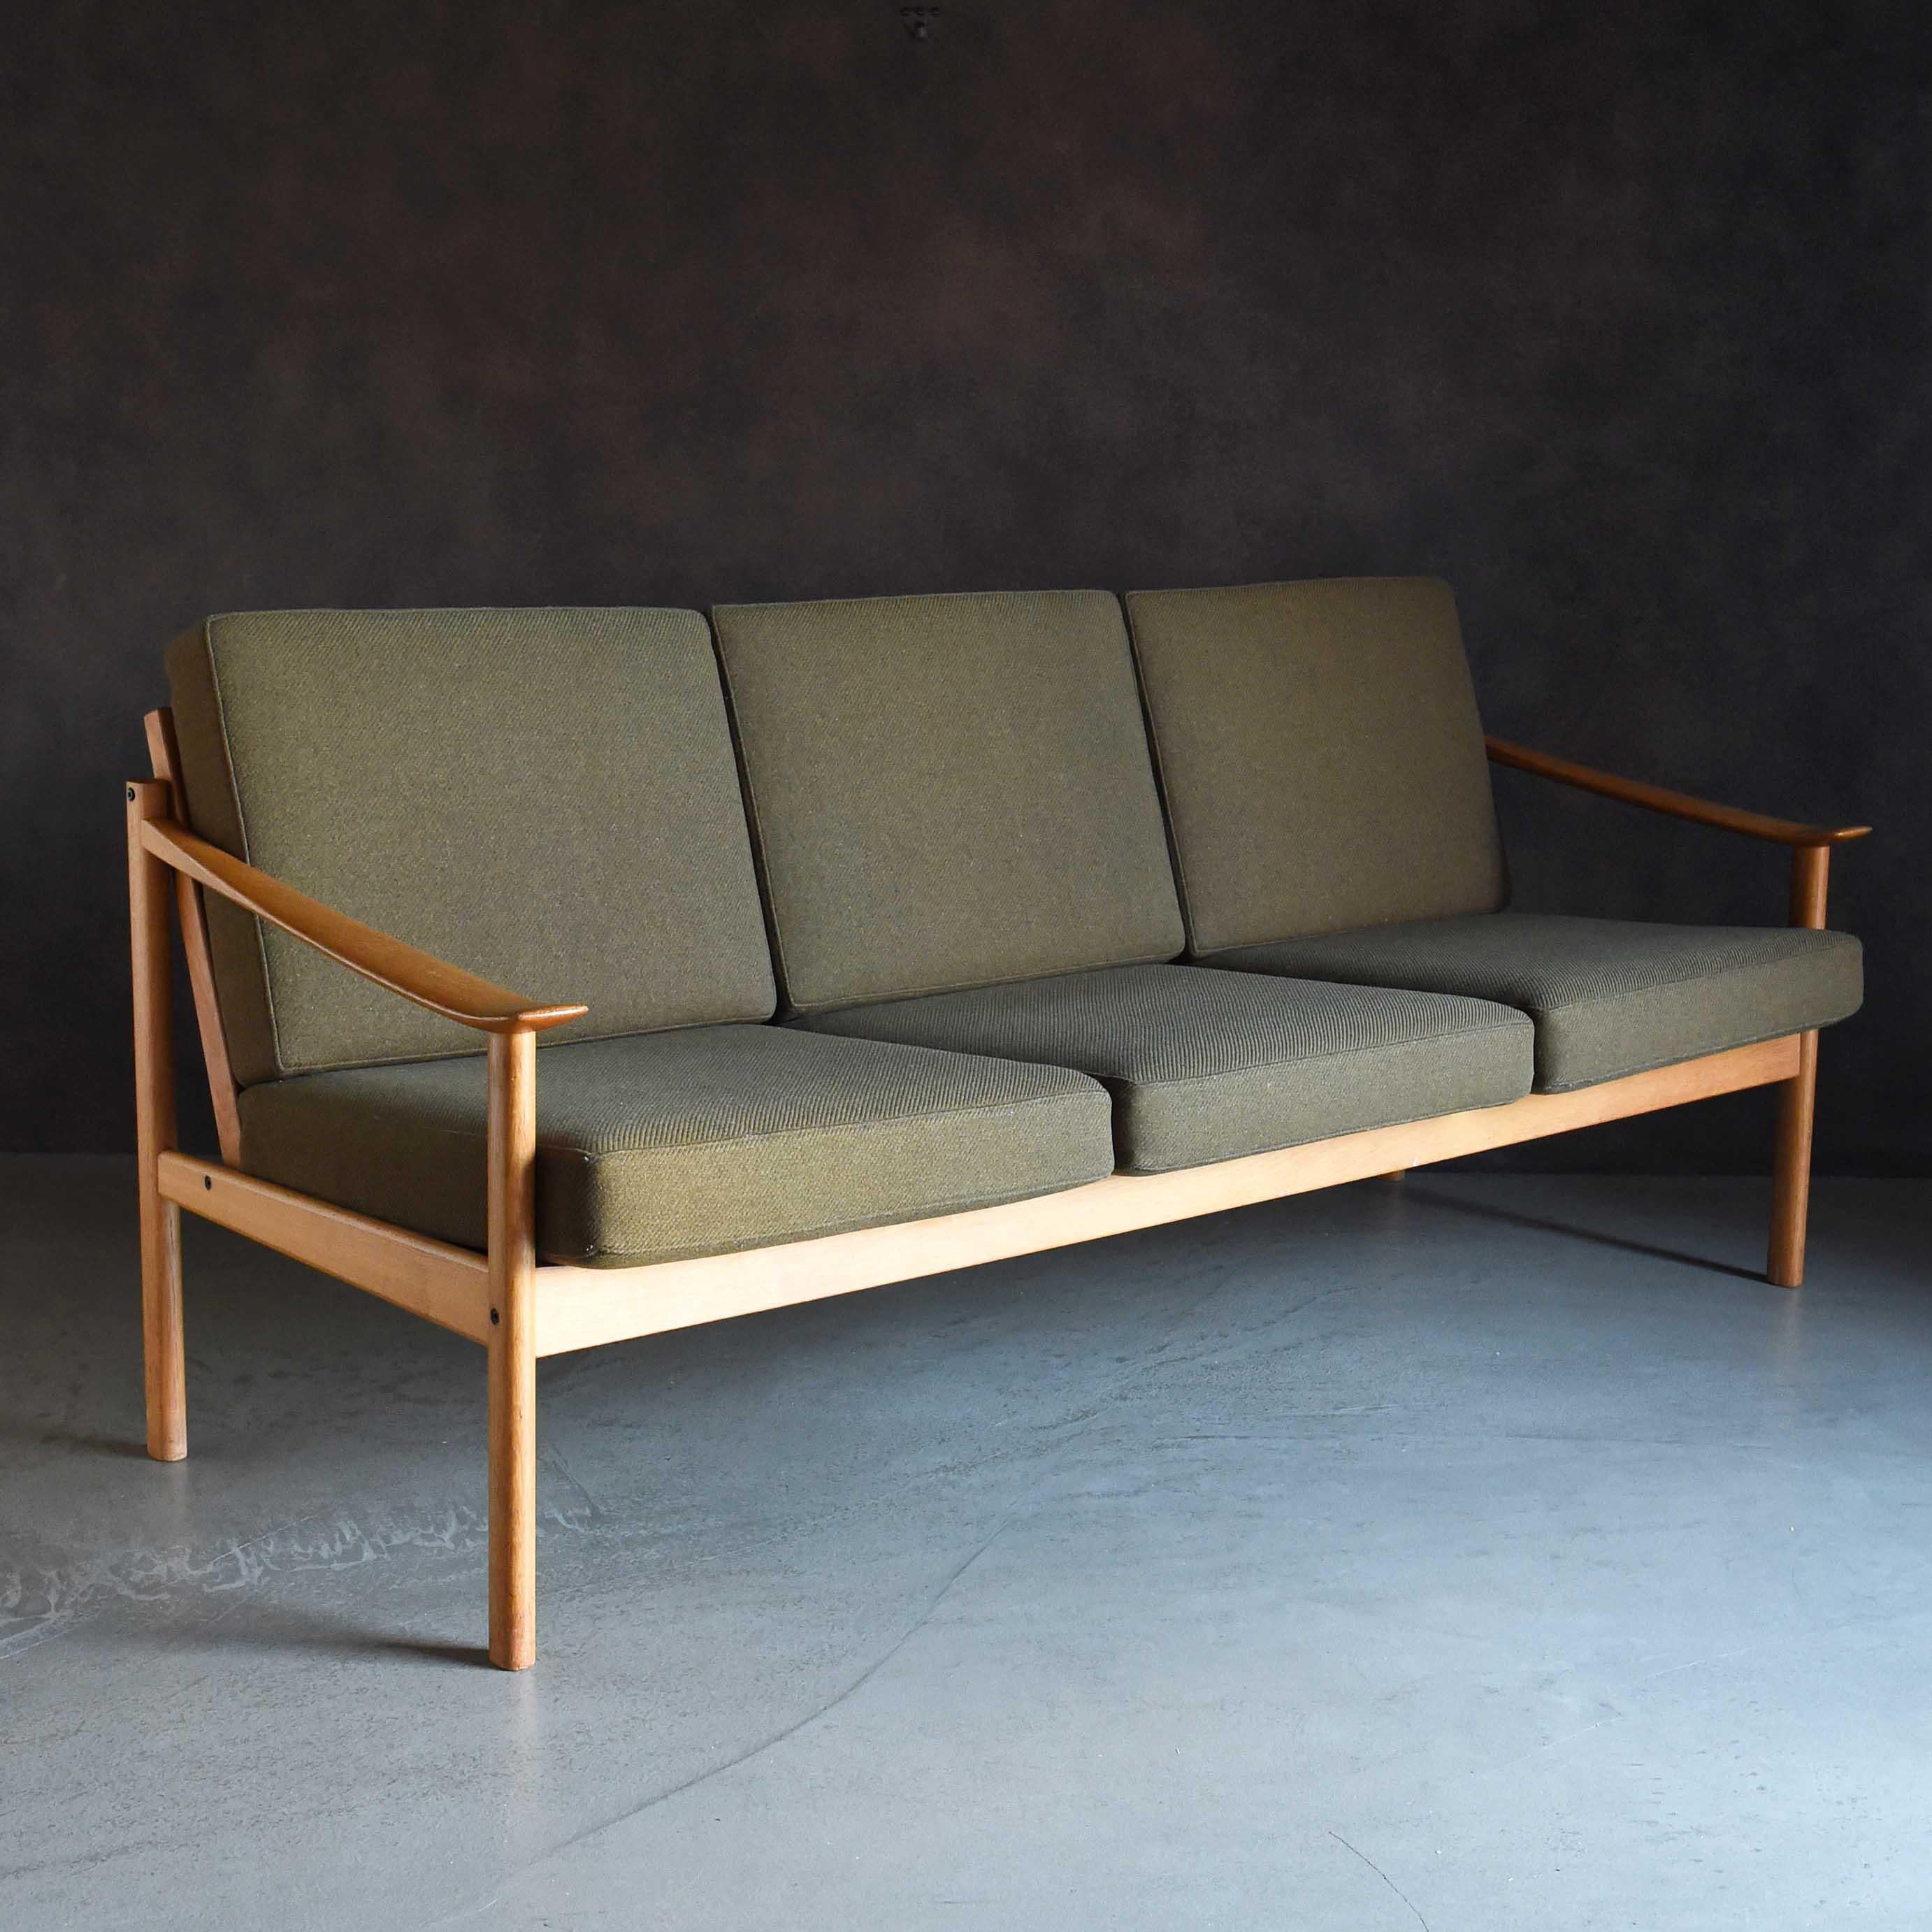 Dieses 3-Sitzer-Sofa wurde von den dänischen Designern Peter Hvidt und Orla Molgaard Nielsen entworfen und zeichnet sich durch seine schön geschwungenen Armlehnen aus. Das Gesamtdesign ist sauber und der Sitz ist geräumig und bequem. Der Hersteller